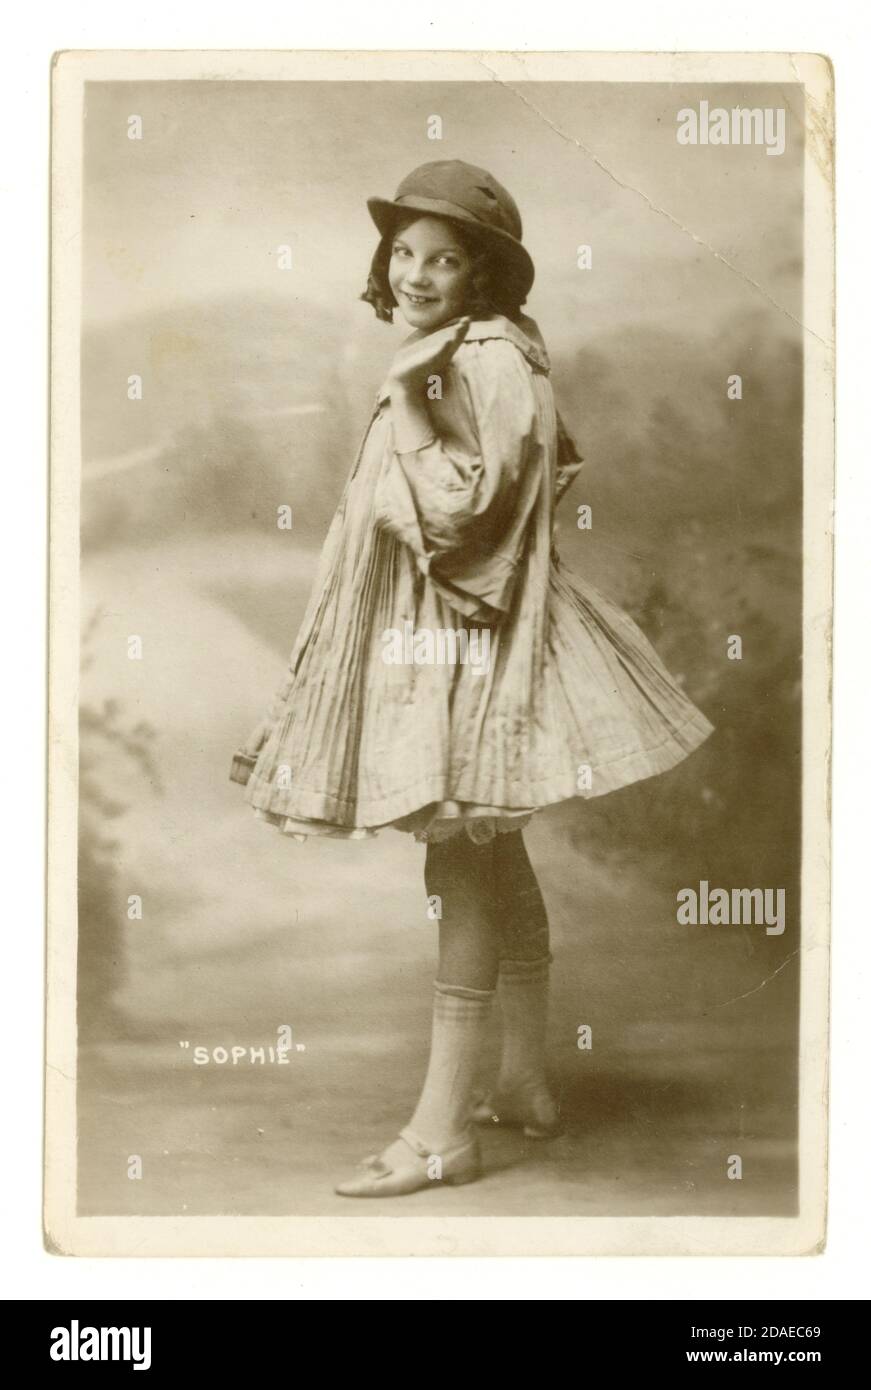 Carte postale de voeux originale avant la première Guerre mondiale de la mignonne fille de l'adolescence nommée Sophie, posant dans un costume de danse, publié en 1913, Royaume-Uni, Walsall, près de Birmingham, West Midlands, Angleterre, Royaume-Uni Banque D'Images